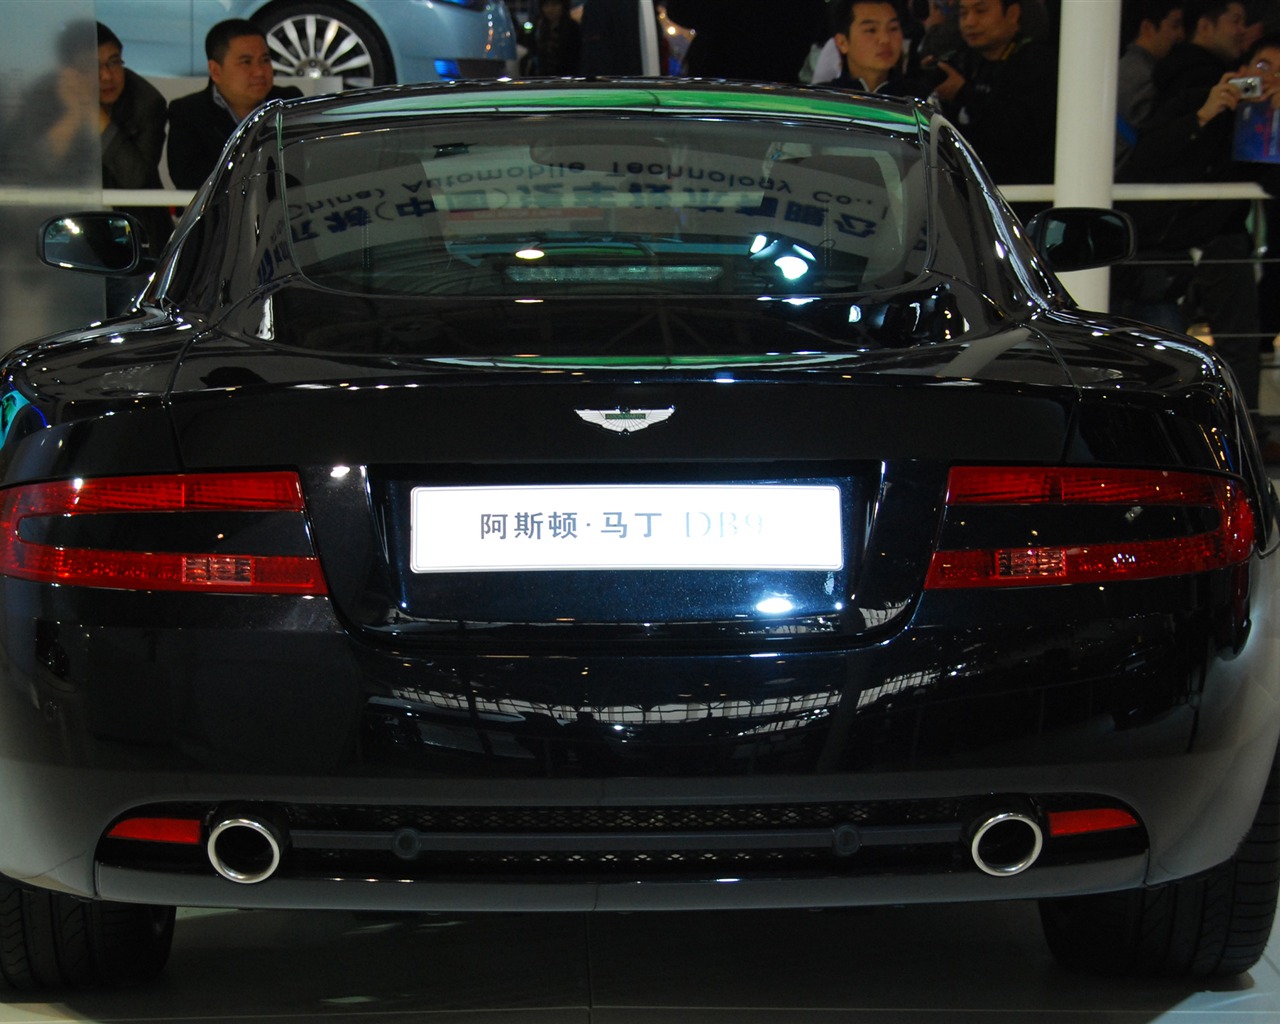 2010北京国际车展(一) (z321x123作品)30 - 1280x1024